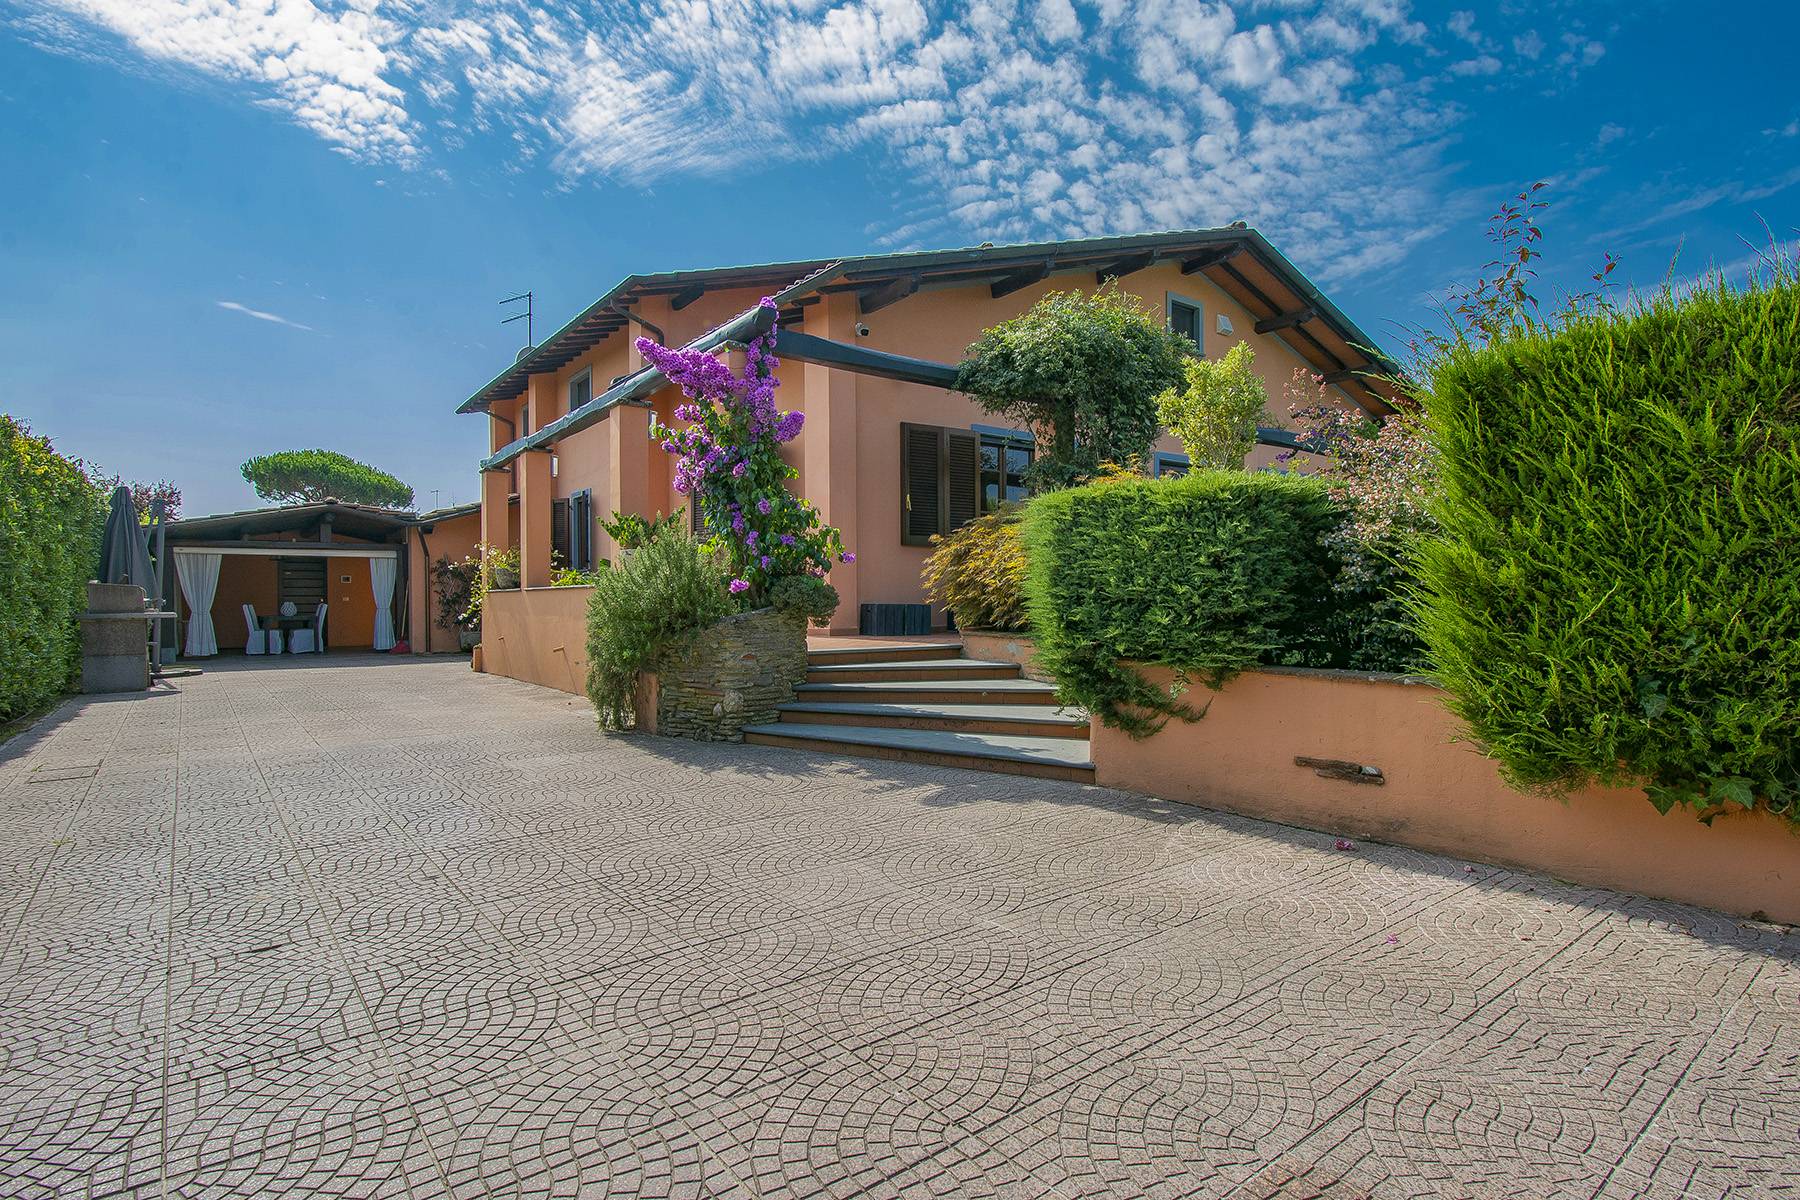 Villa in Vendita a Pietrasanta: 5 locali, 300 mq - Foto 2